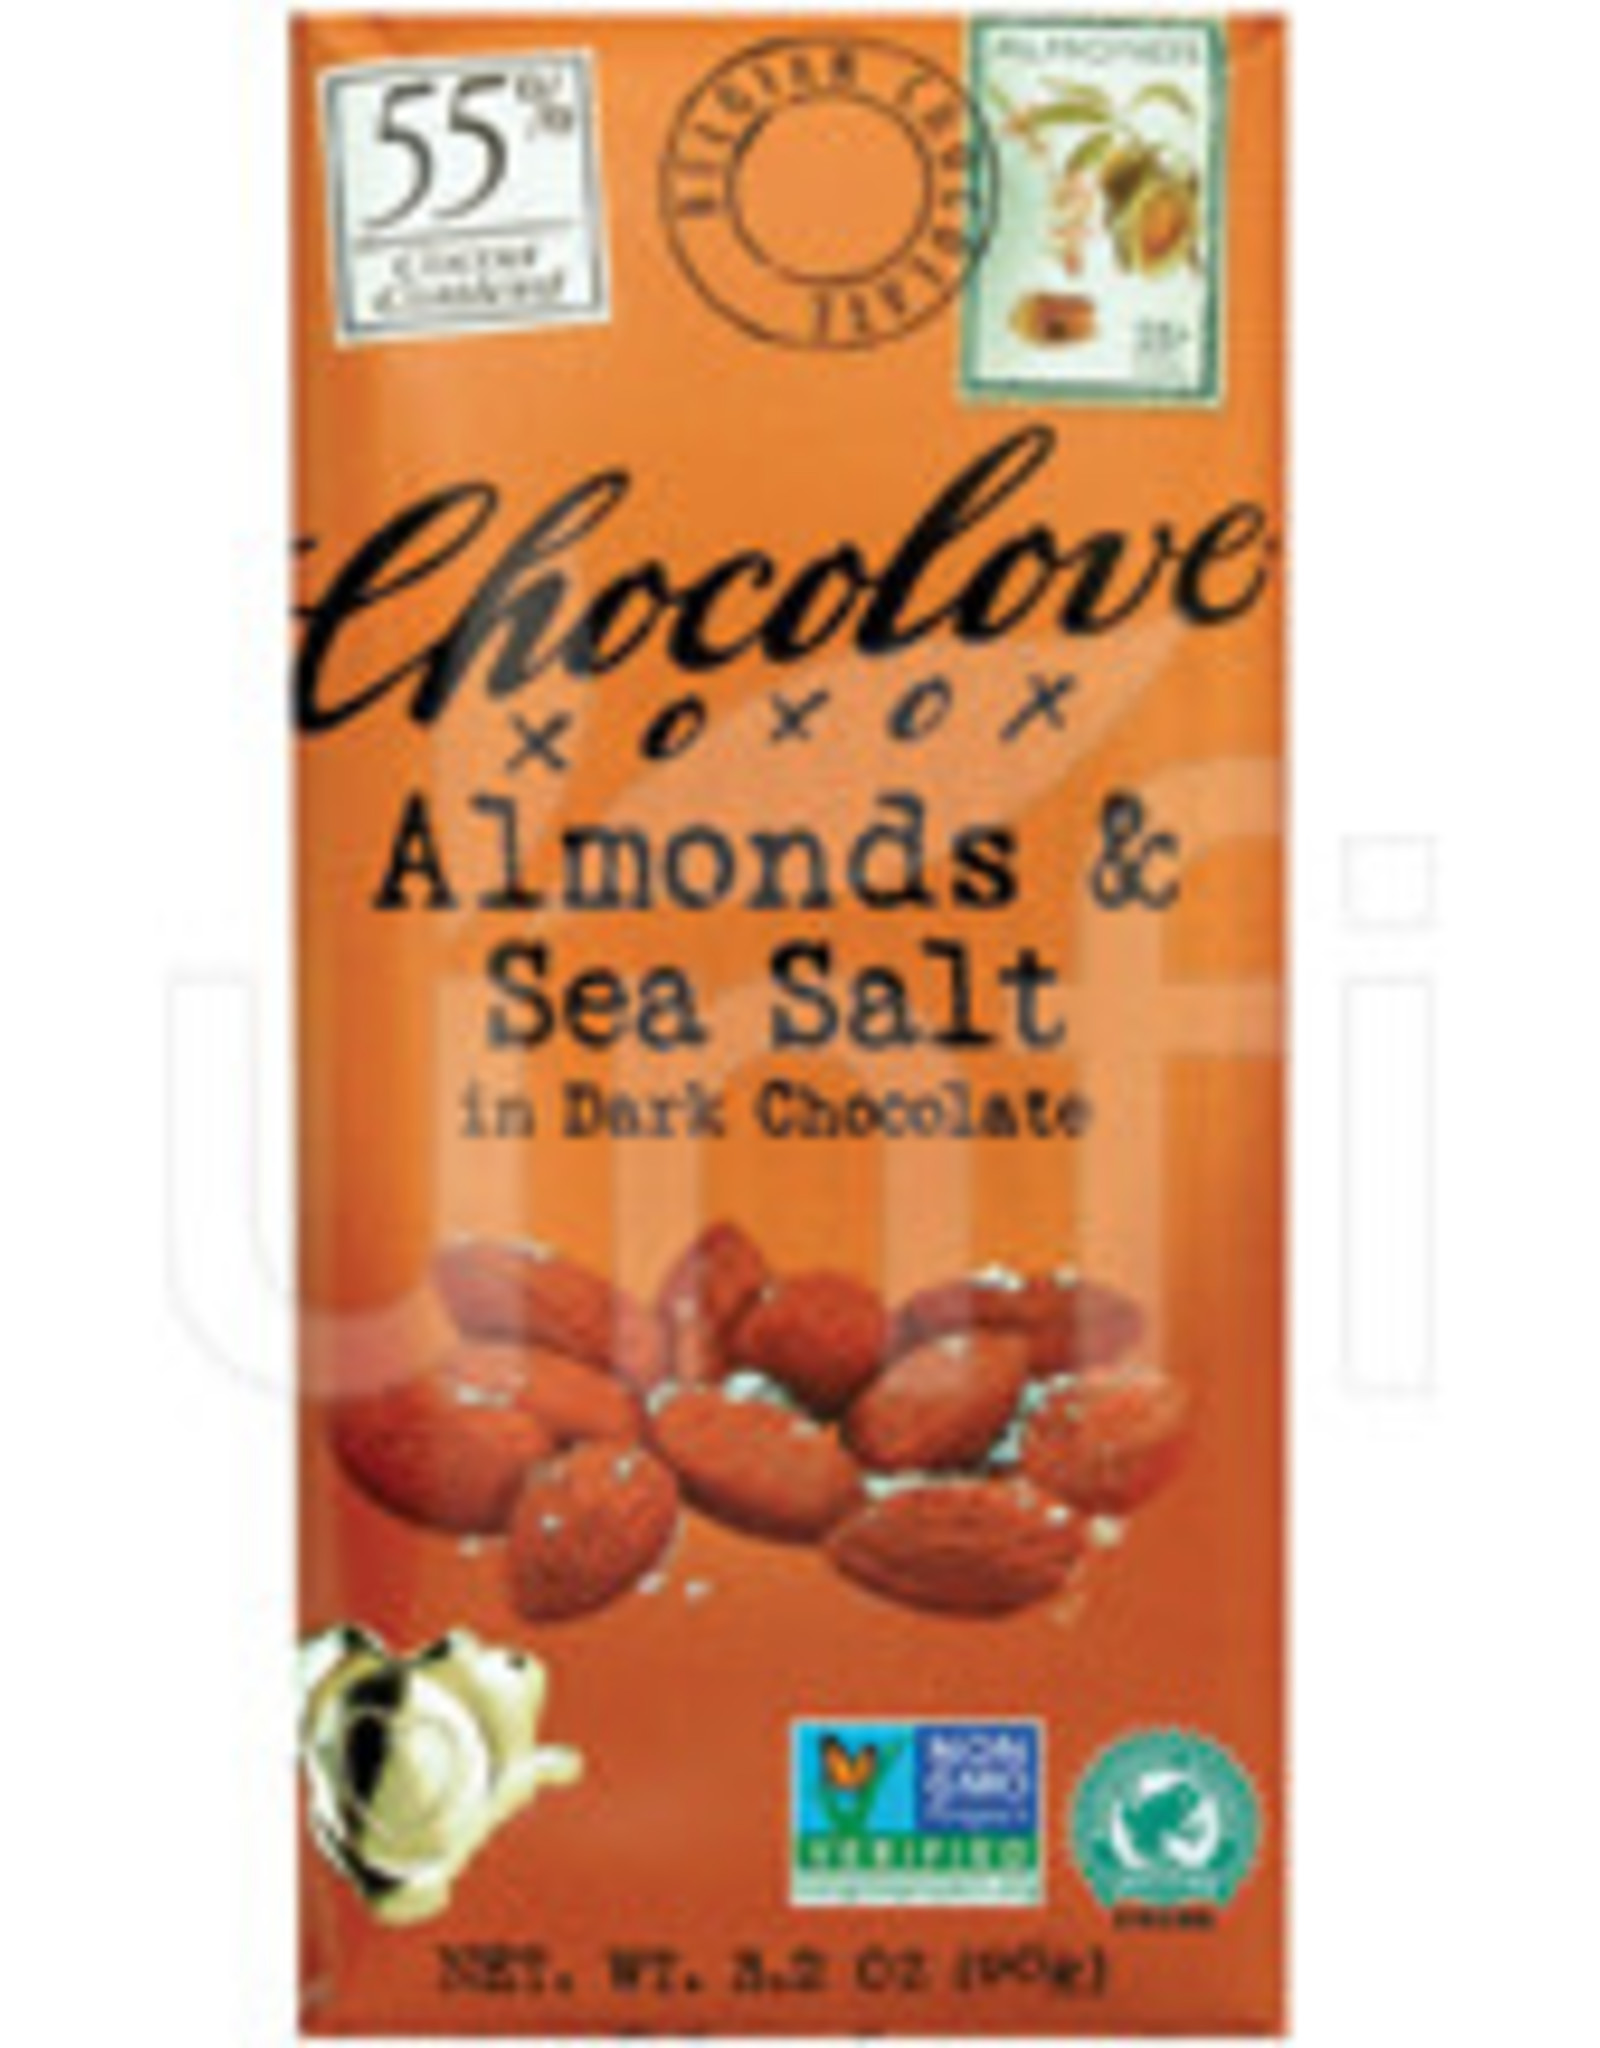 Chocolove Dark Chocolate Bar; Almonds & Sea Salt 3.2oz